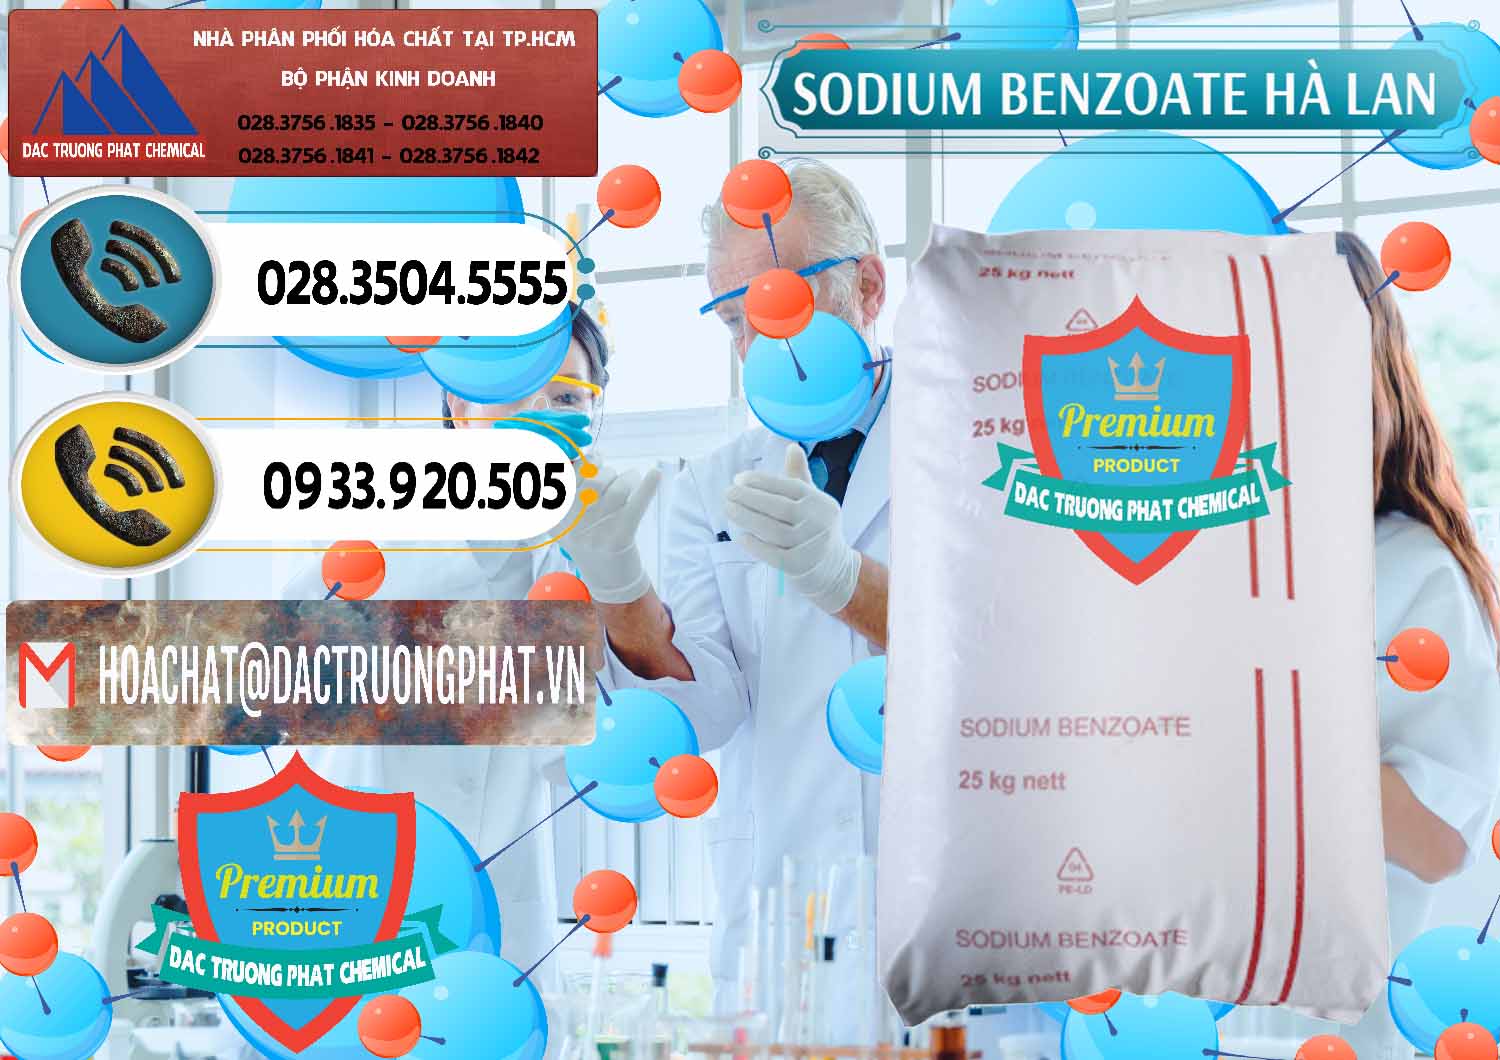 Chuyên cung ứng và bán Sodium Benzoate - Mốc Bột Chữ Cam Hà Lan Netherlands - 0360 - Cty chuyên phân phối _ nhập khẩu hóa chất tại TP.HCM - hoachatdetnhuom.vn